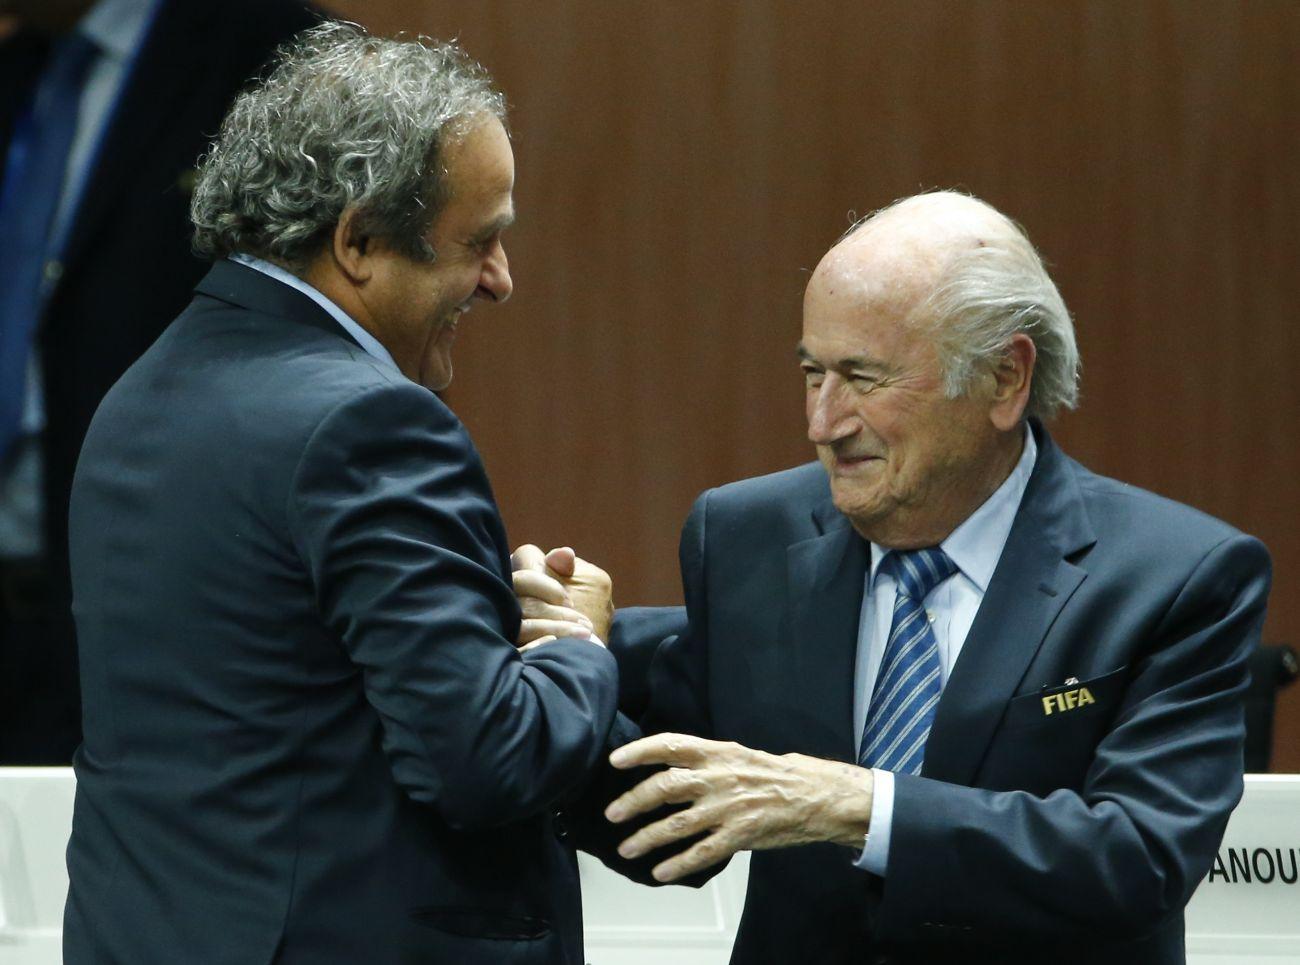 Az a Michel Platini UEFA-elnök is gratulált, aki szerint a választást el kellett volna halasztani a botrány miatt